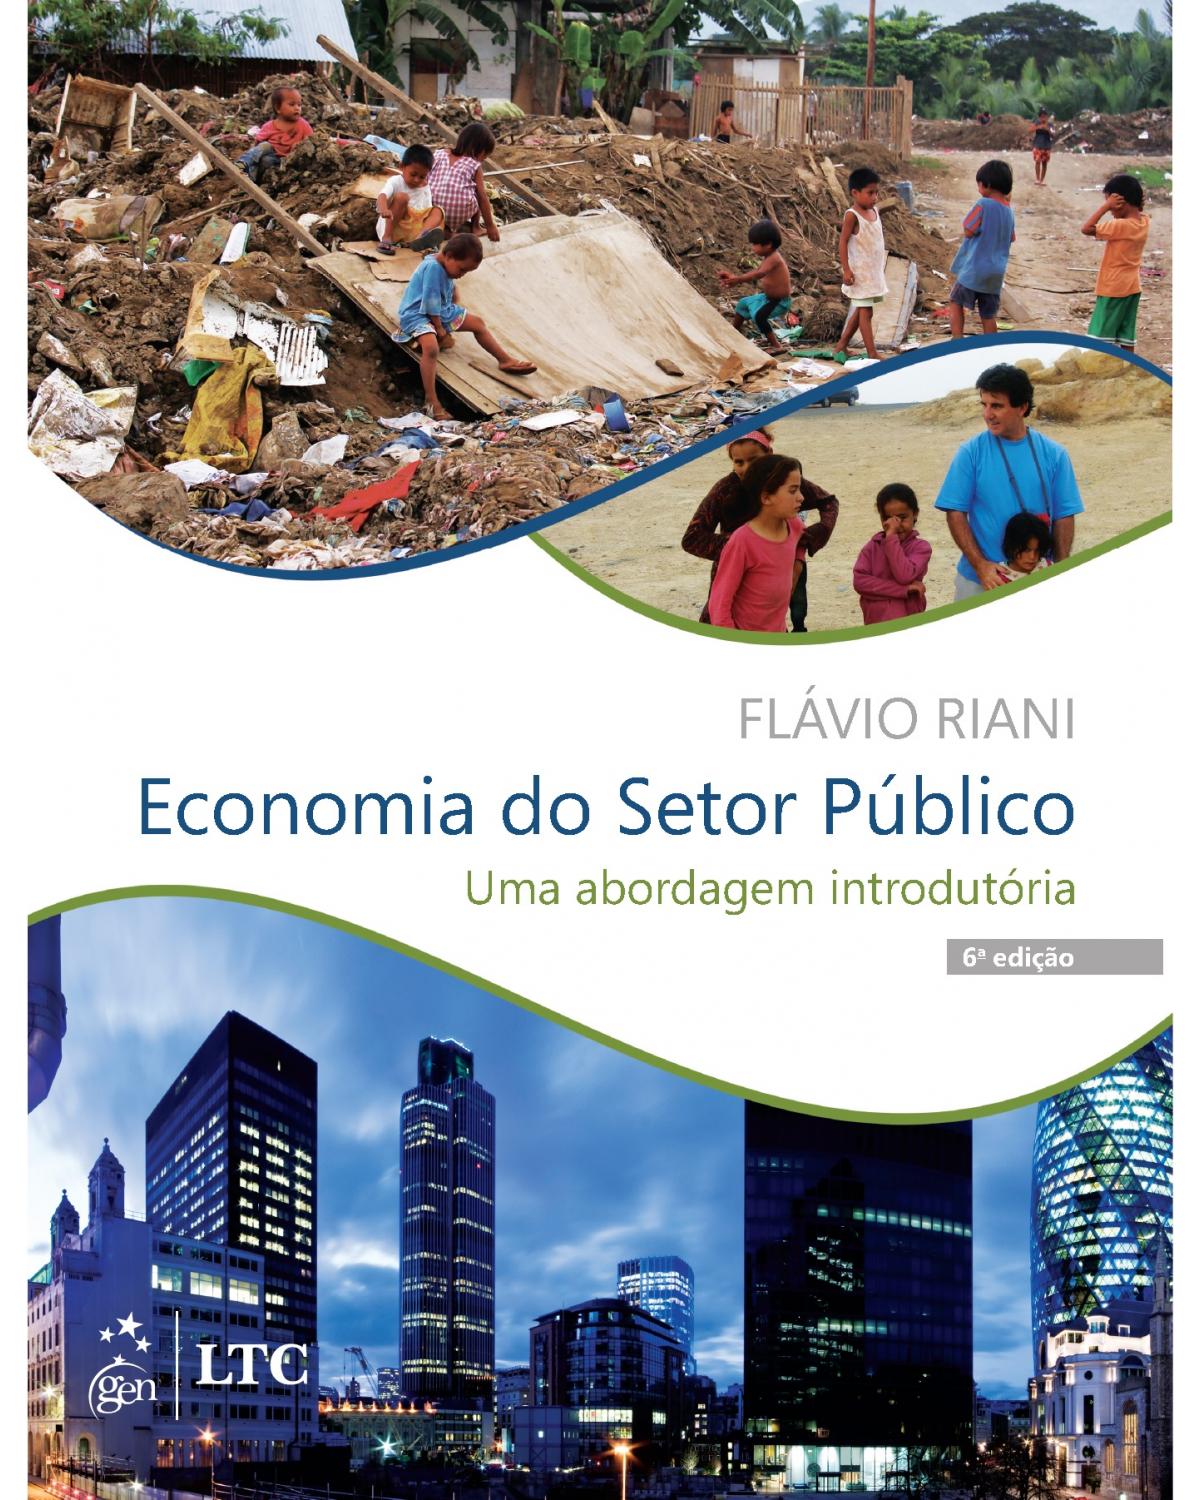 Economia do setor público - Uma abordagem introdutória - 6ª Edição | 2016